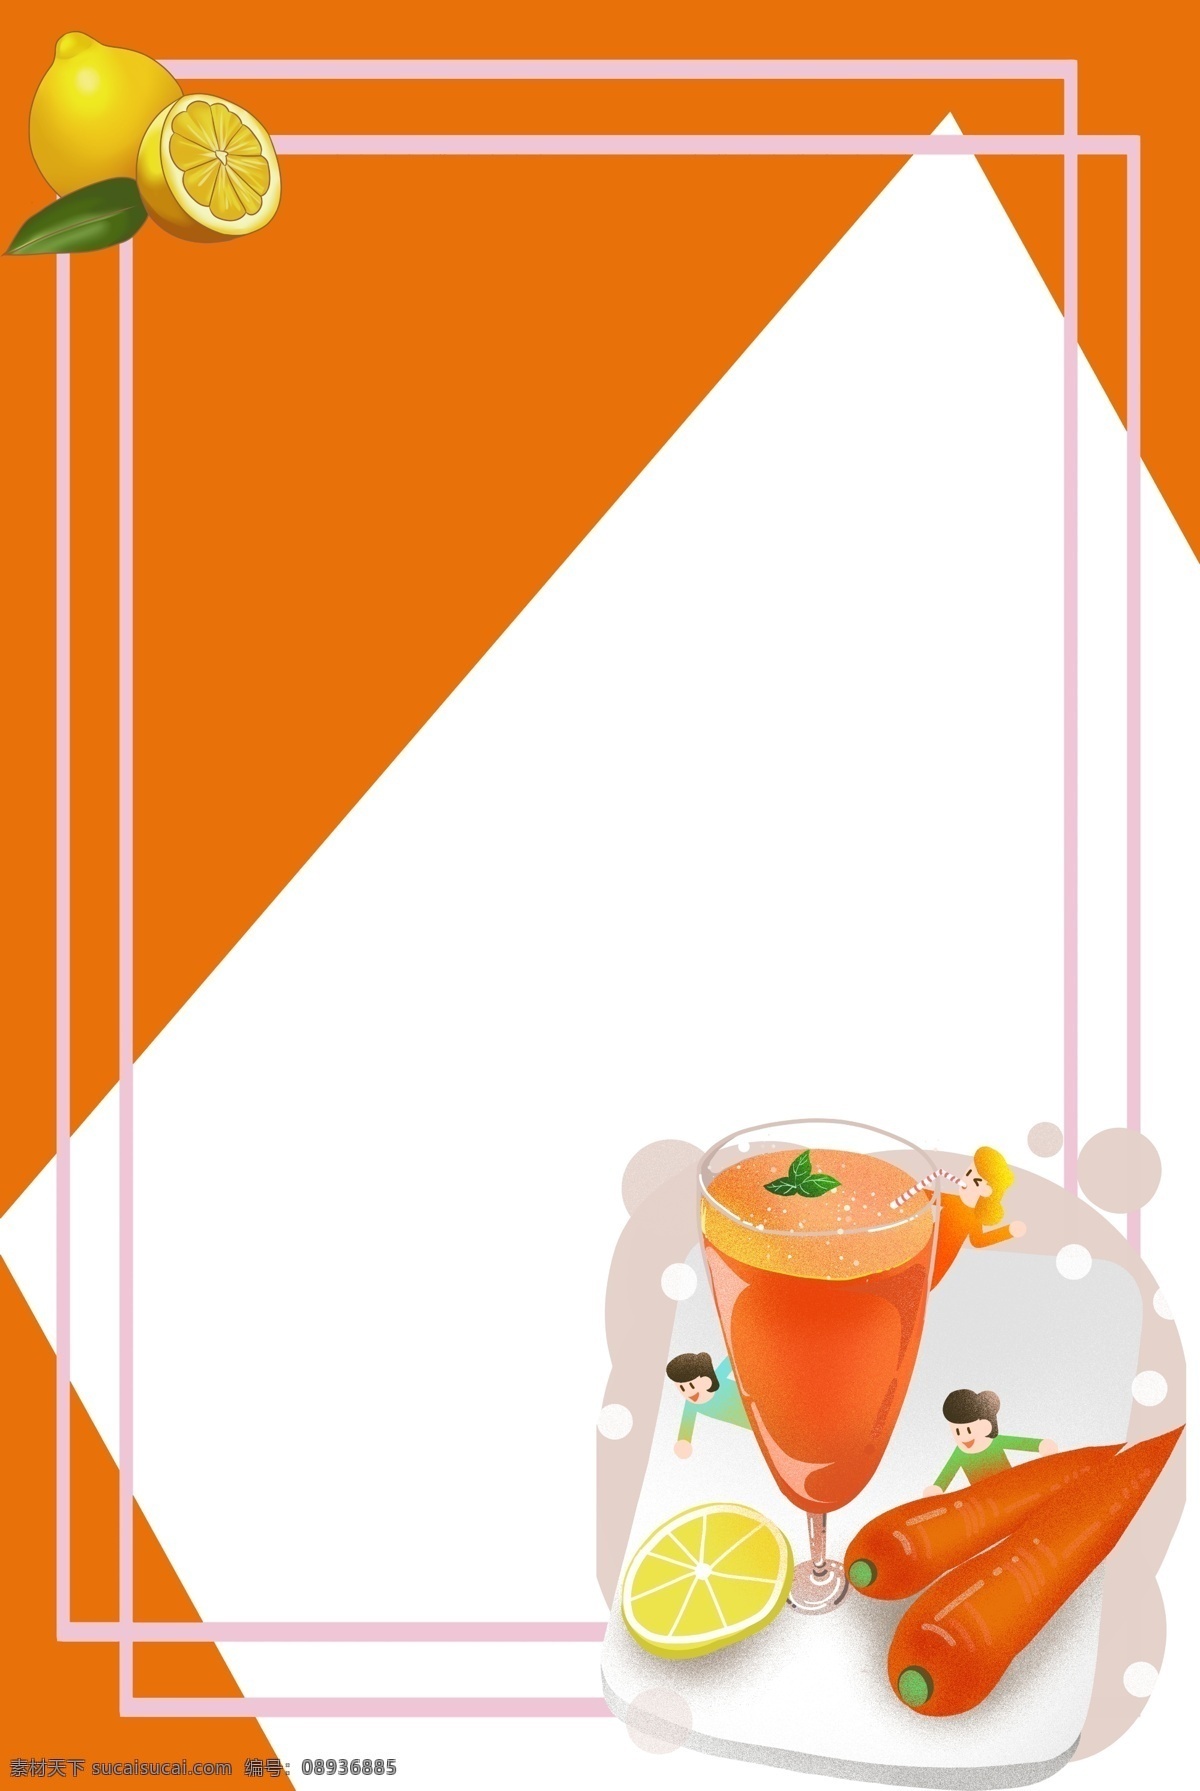 夏季果汁背景 夏季 果汁 背景 冰爽 橘色 橙色 胡萝卜 水果汁